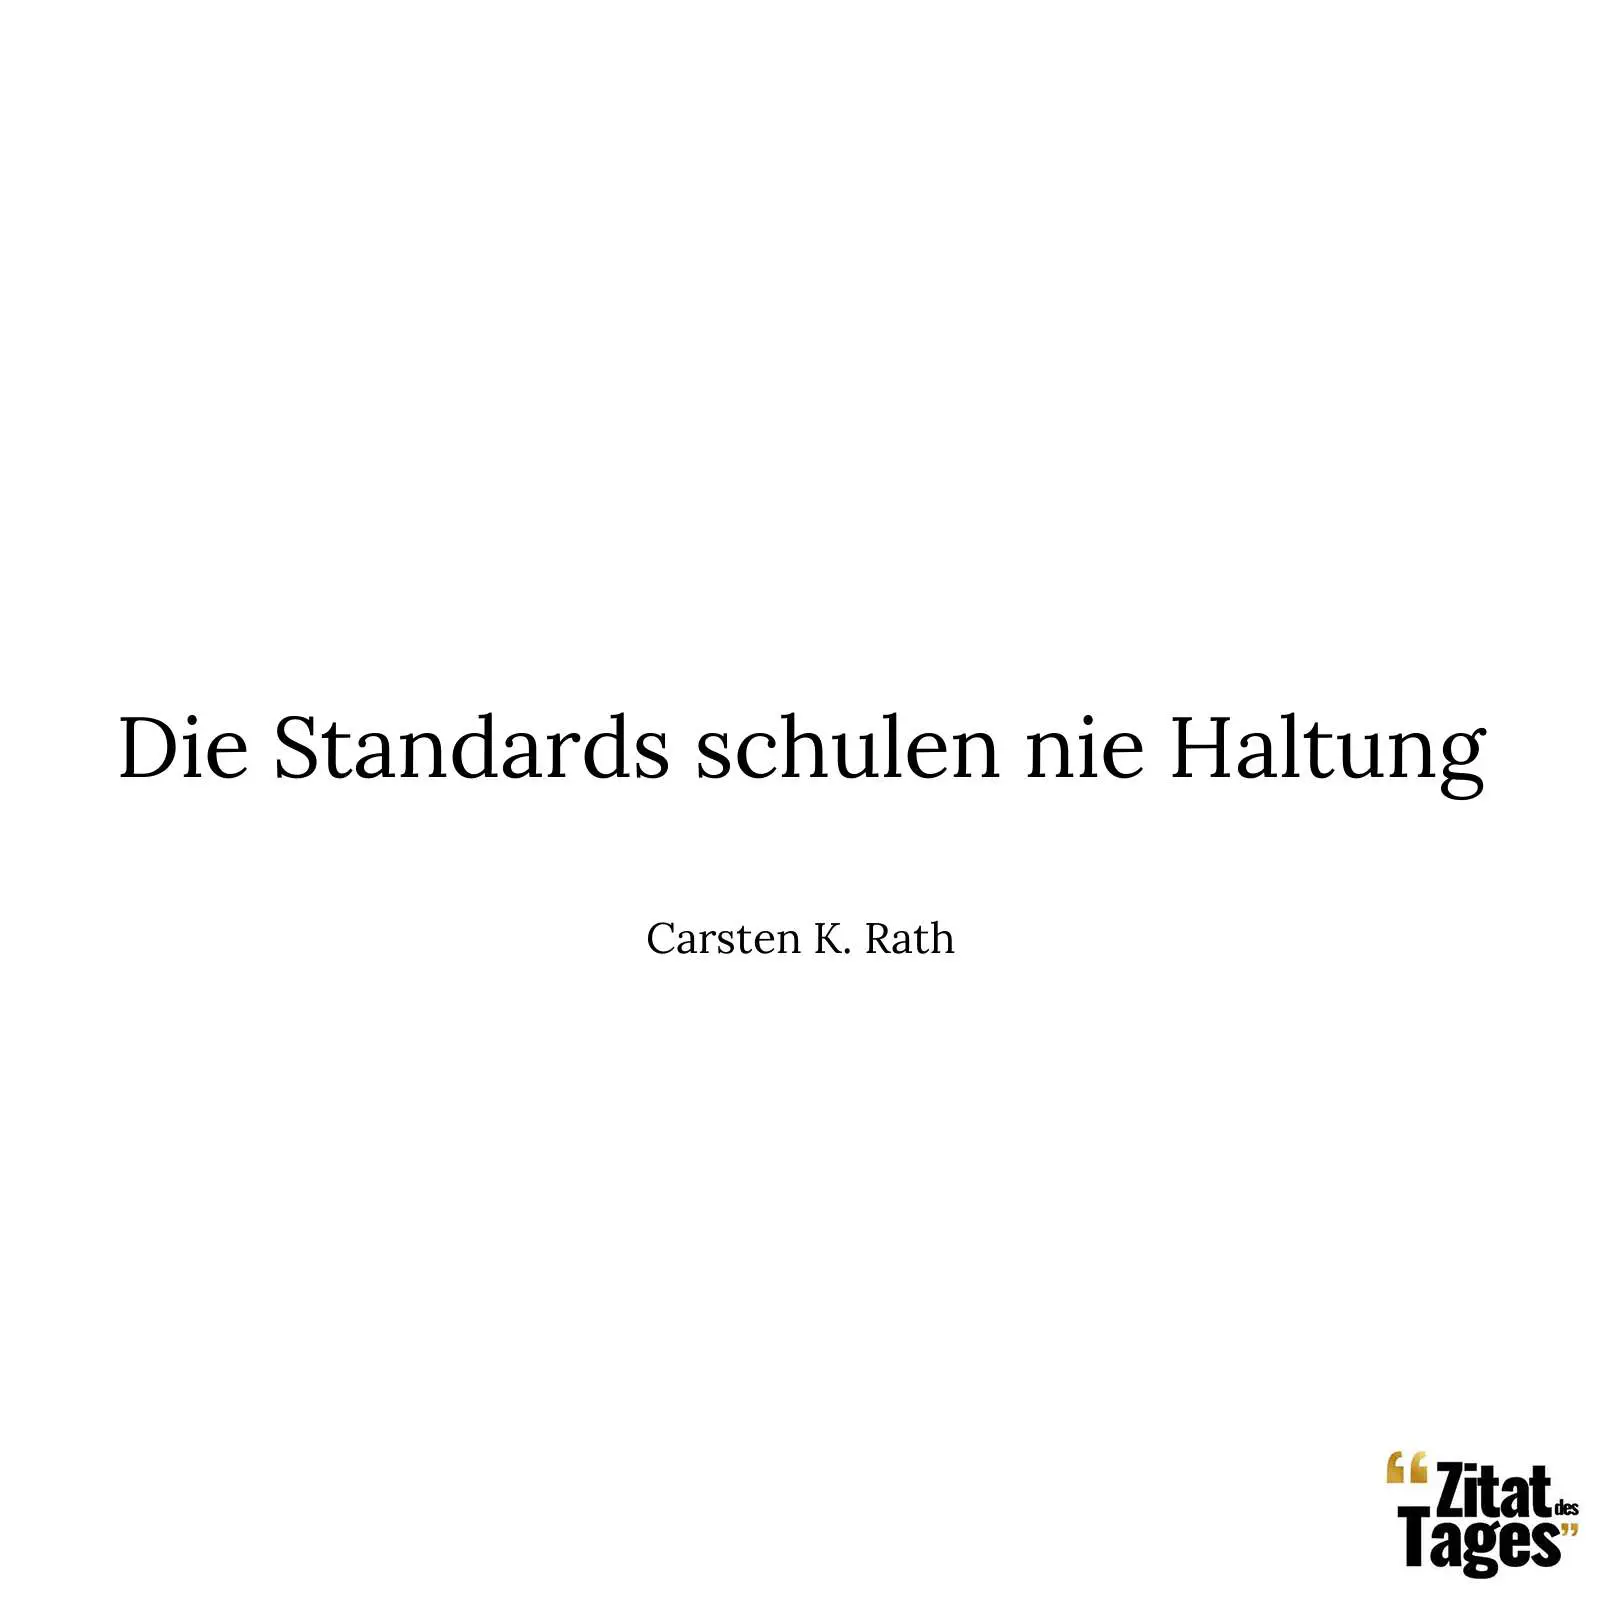 Die Standards schulen nie Haltung - Carsten K. Rath